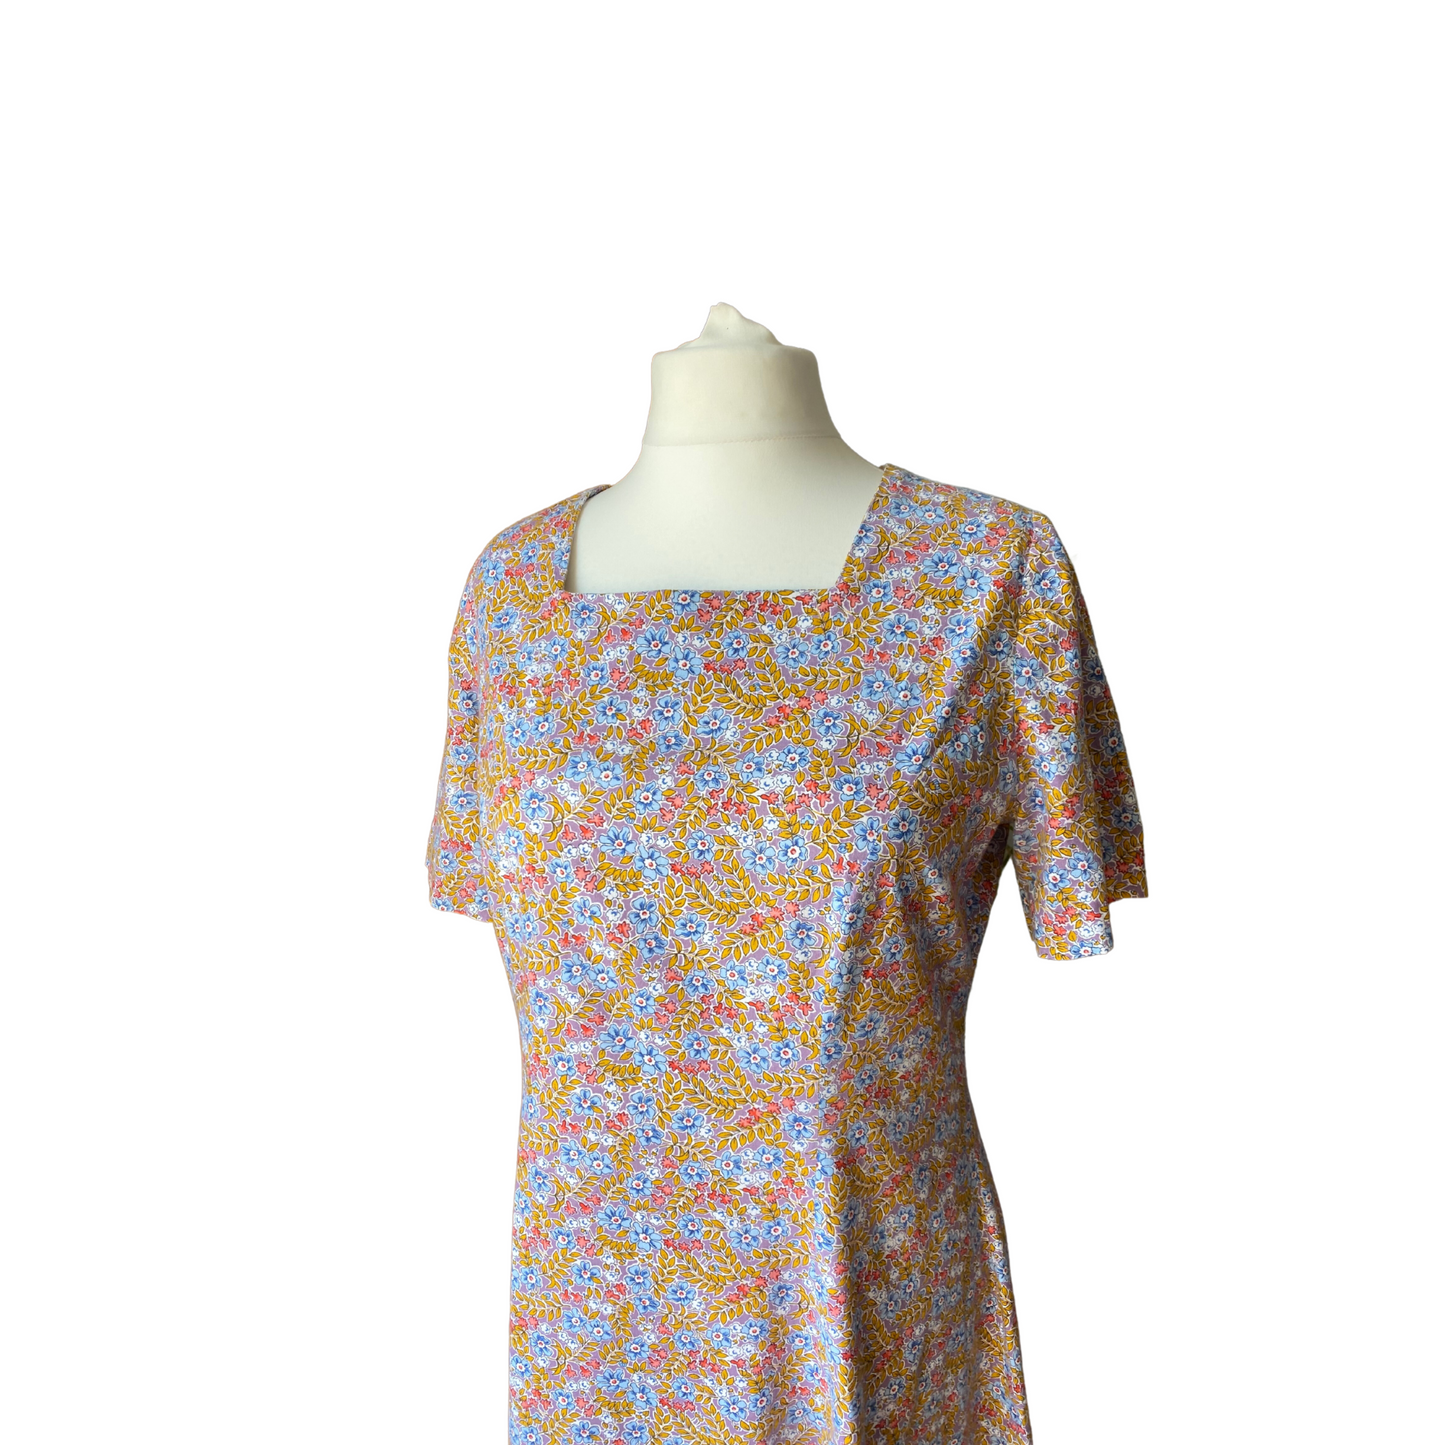 Cotton floral short sleeved vintage Summer dress. Approx UK size 18-20